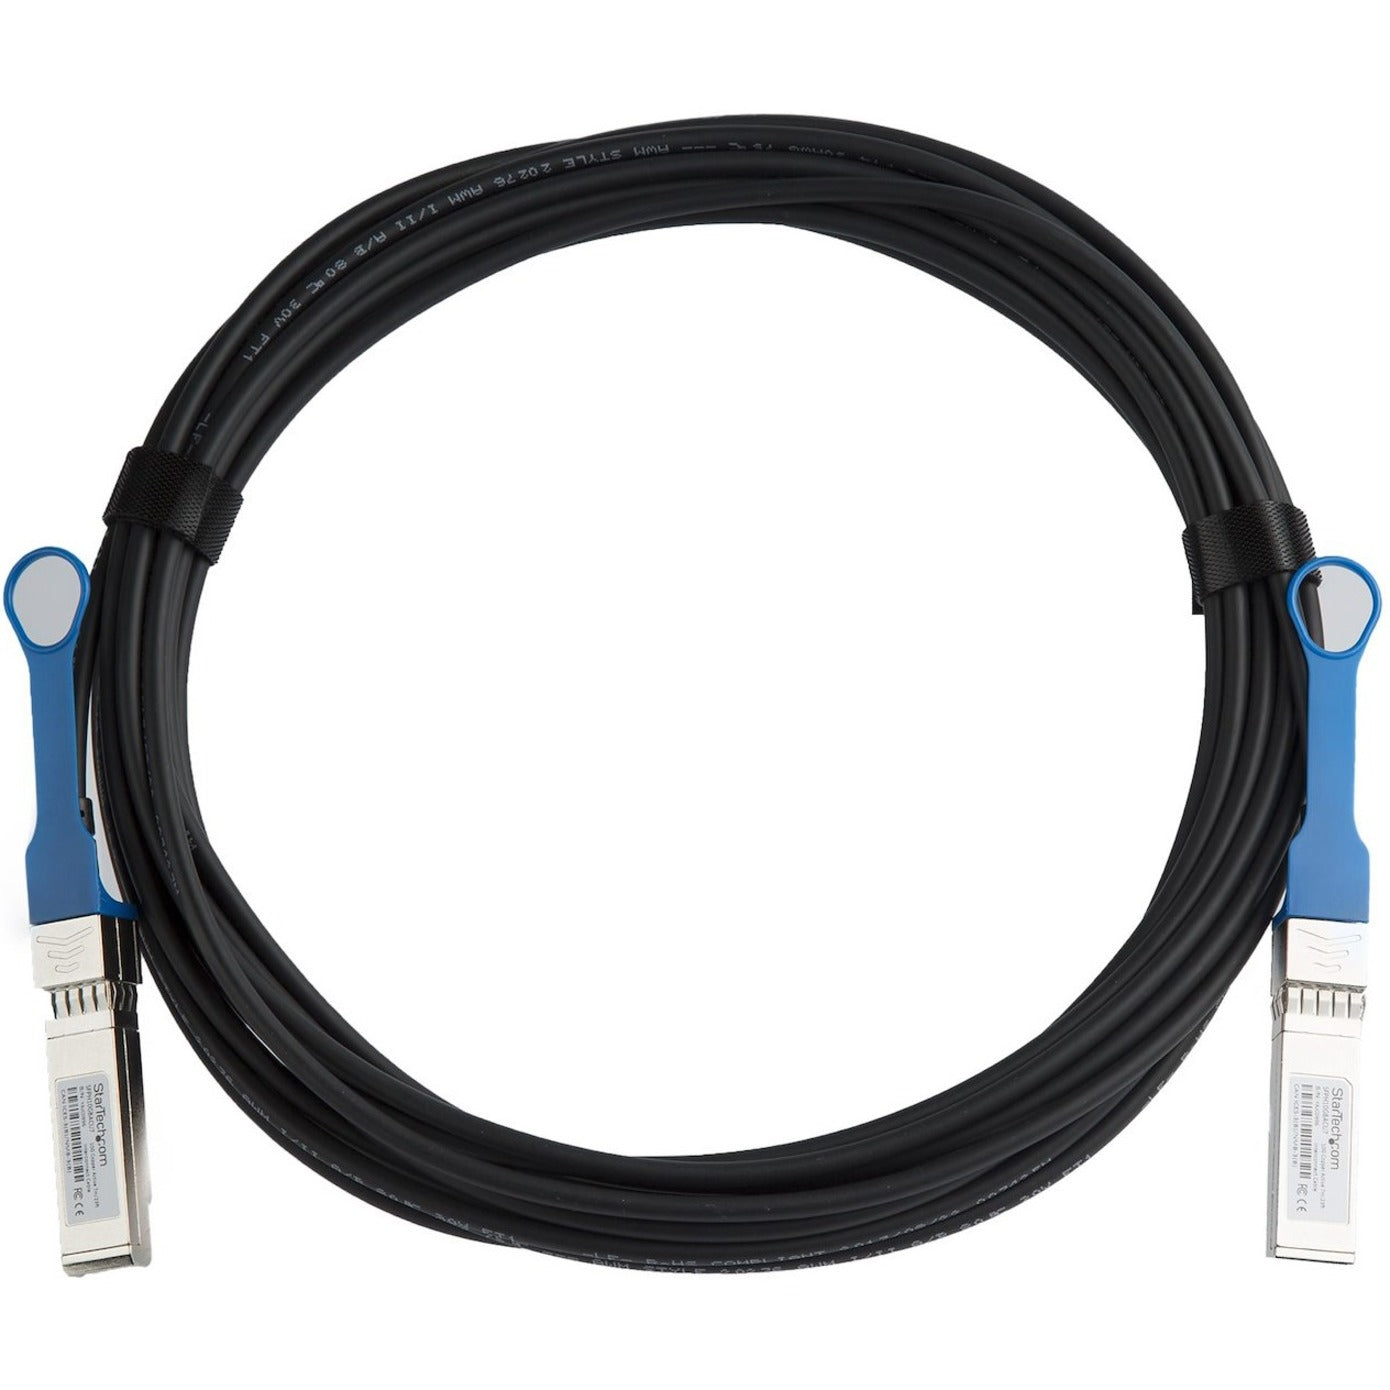 星铁科技 SFPH10GBACU7 SFP+ 互连直连电缆 - 7 米 (23 英尺) 热插拔 主动式 10 Gbit/s 星铁科技 - 品牌名称